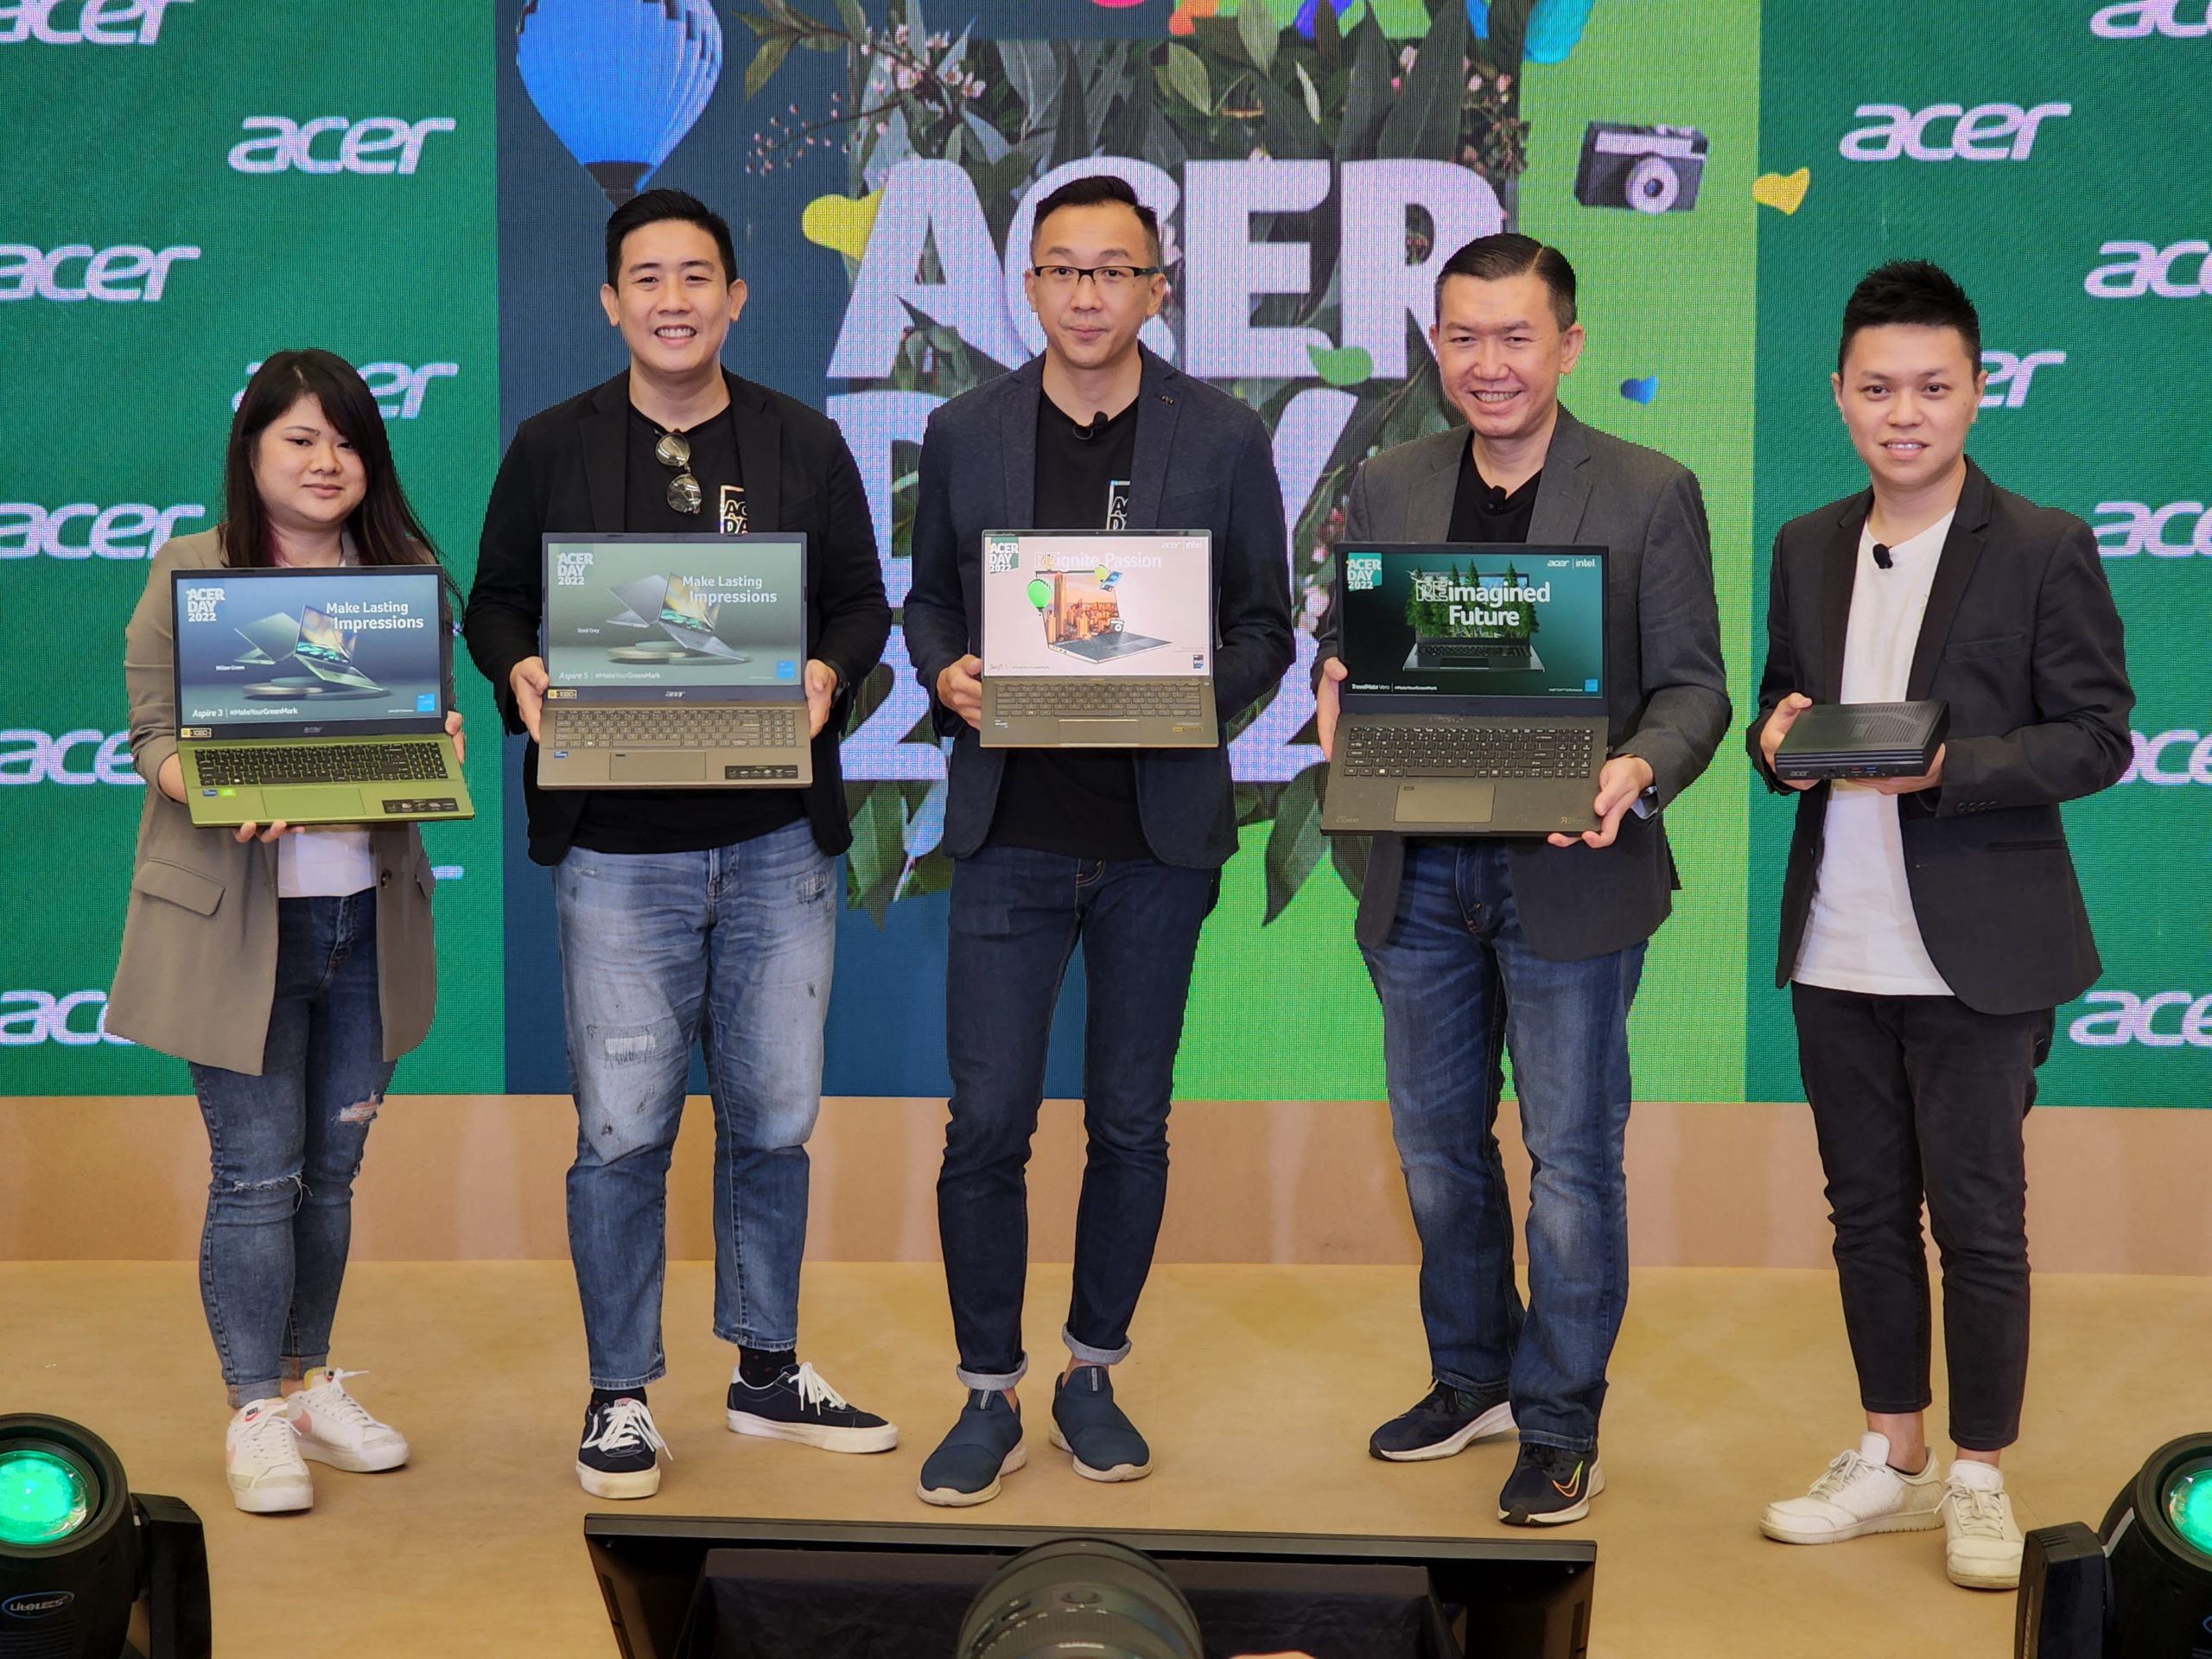 ACER Day 2022 dimulakan dengan pelancaran Acer Swift 5 dan inisiatif teknologi mampan 11